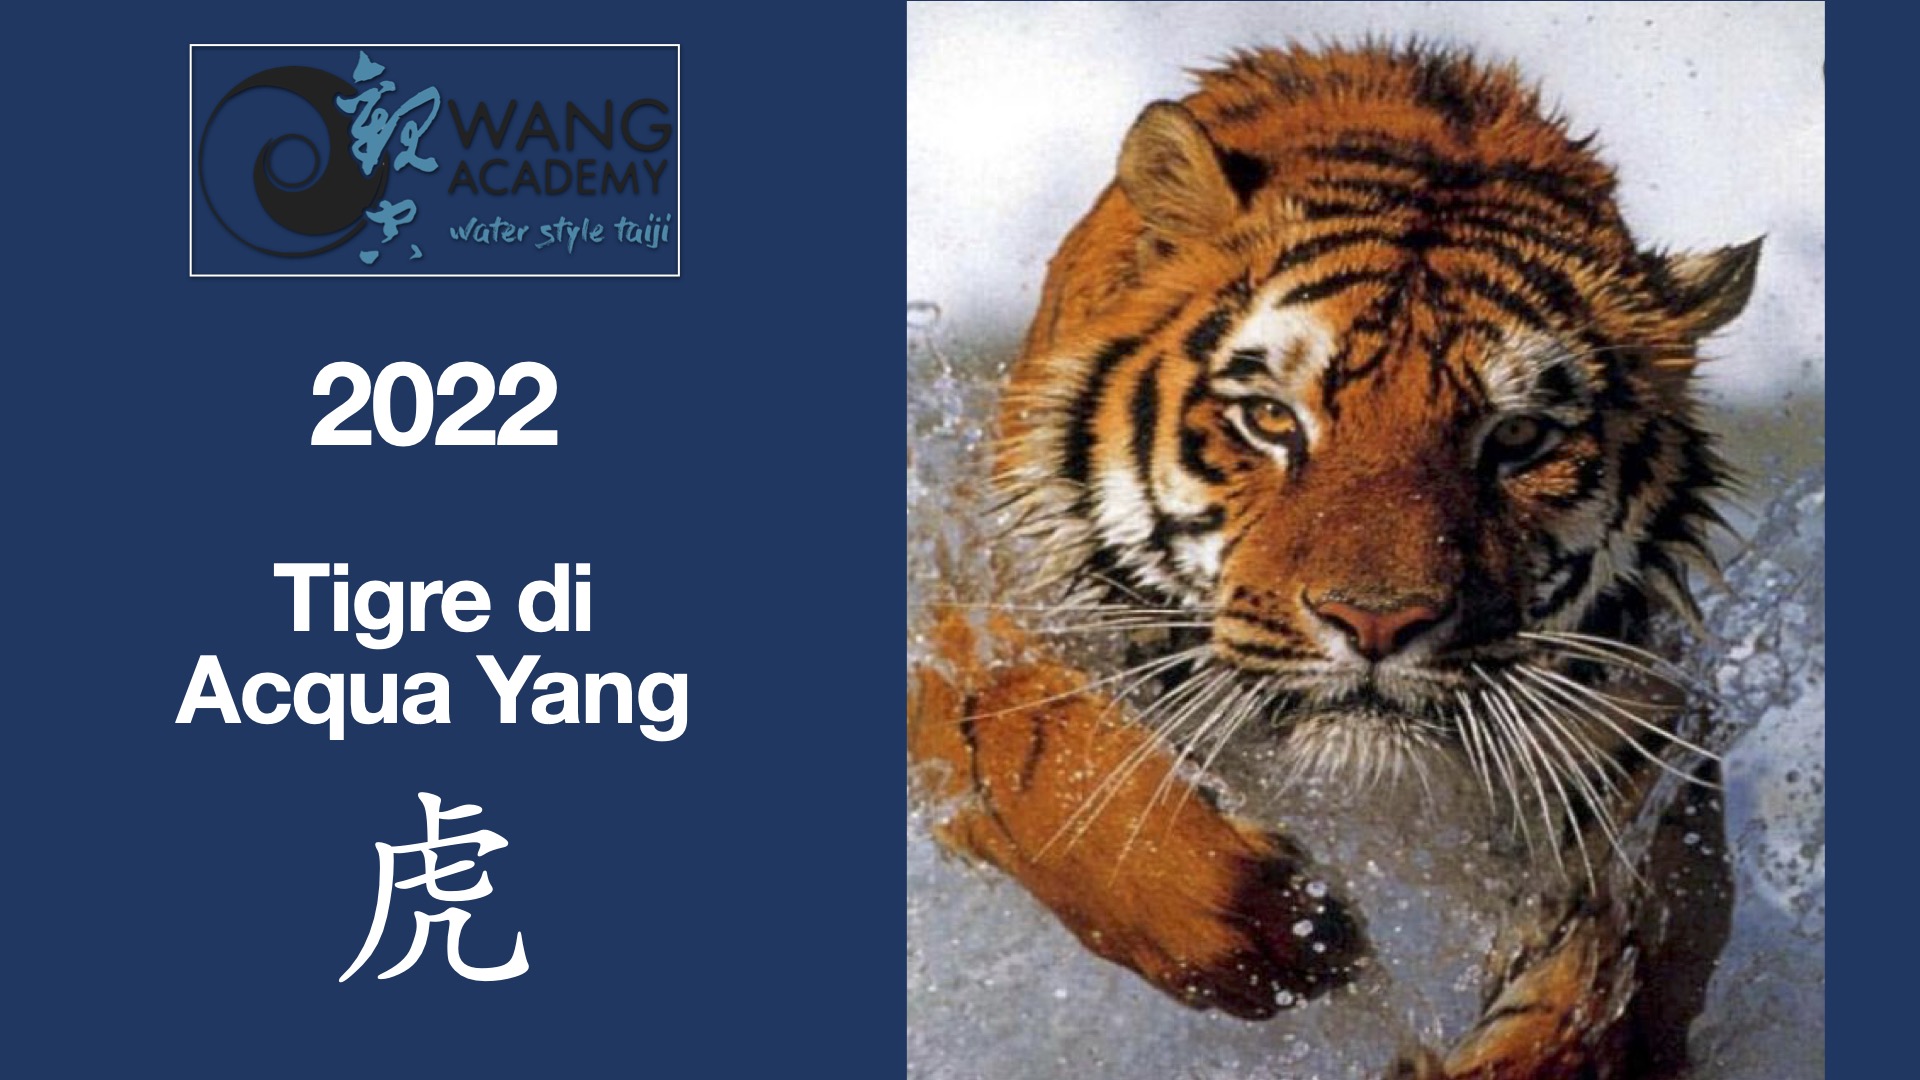 2022 Anno della Tigre d’Acqua